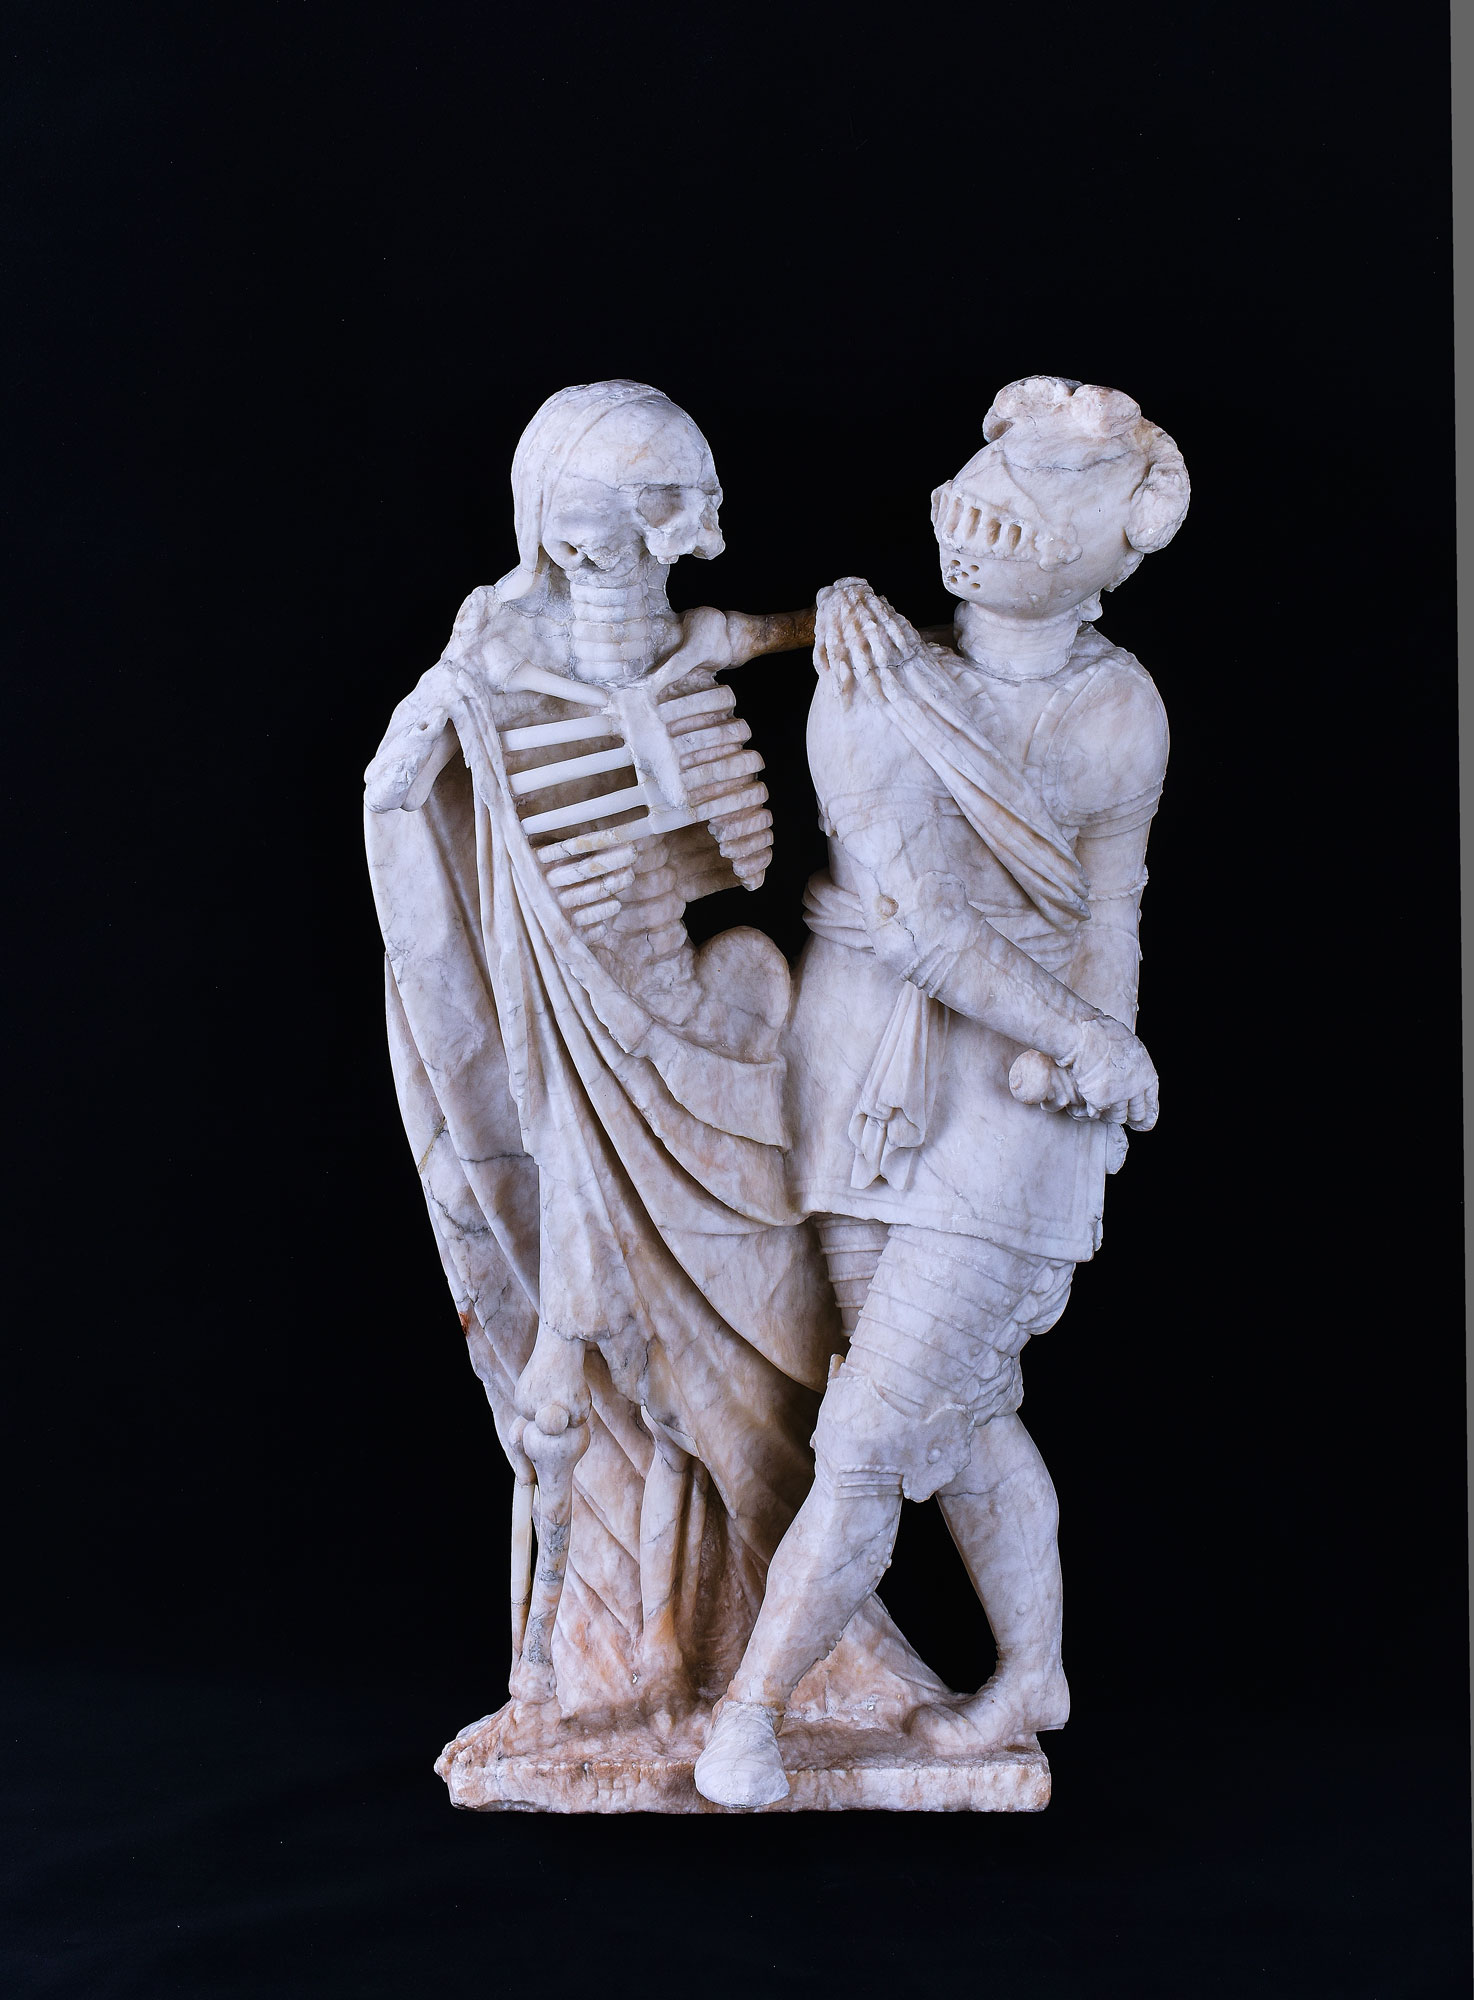 Anonyme - La Mort et le chevalier - Albâtre taillé - 16e  siècle - Collections Ville de Mons – Artothèque, inv. JL.Sp.23 - Photo : J. Luyten
